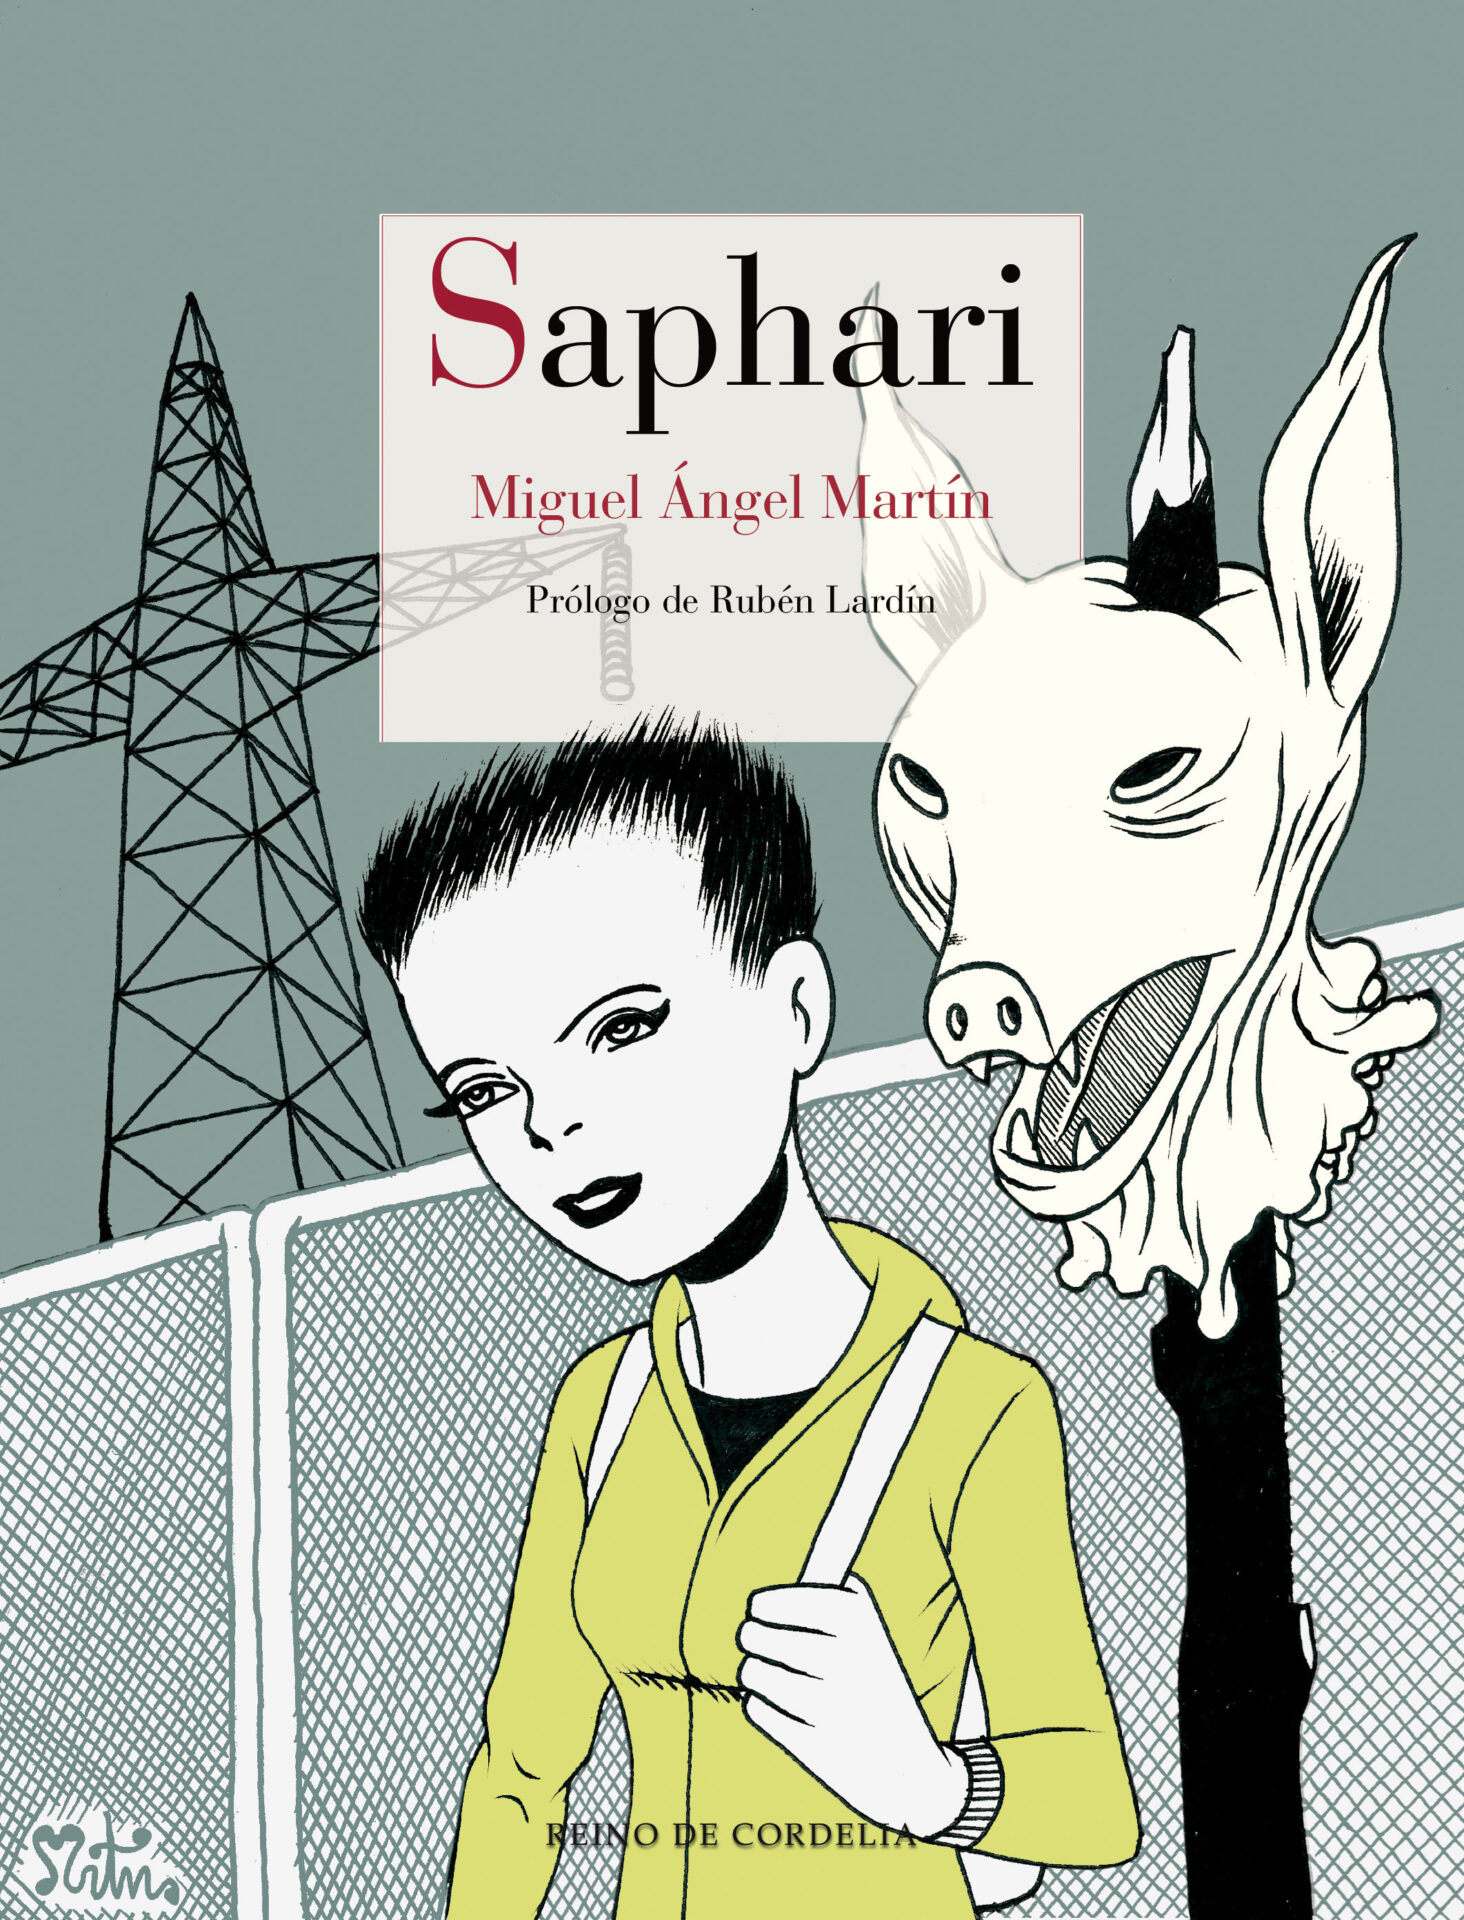 ACTUALIZACIÓN: Sorteamos 3 ejemplares de Saphari firmados, de Miguel Ángel Martín